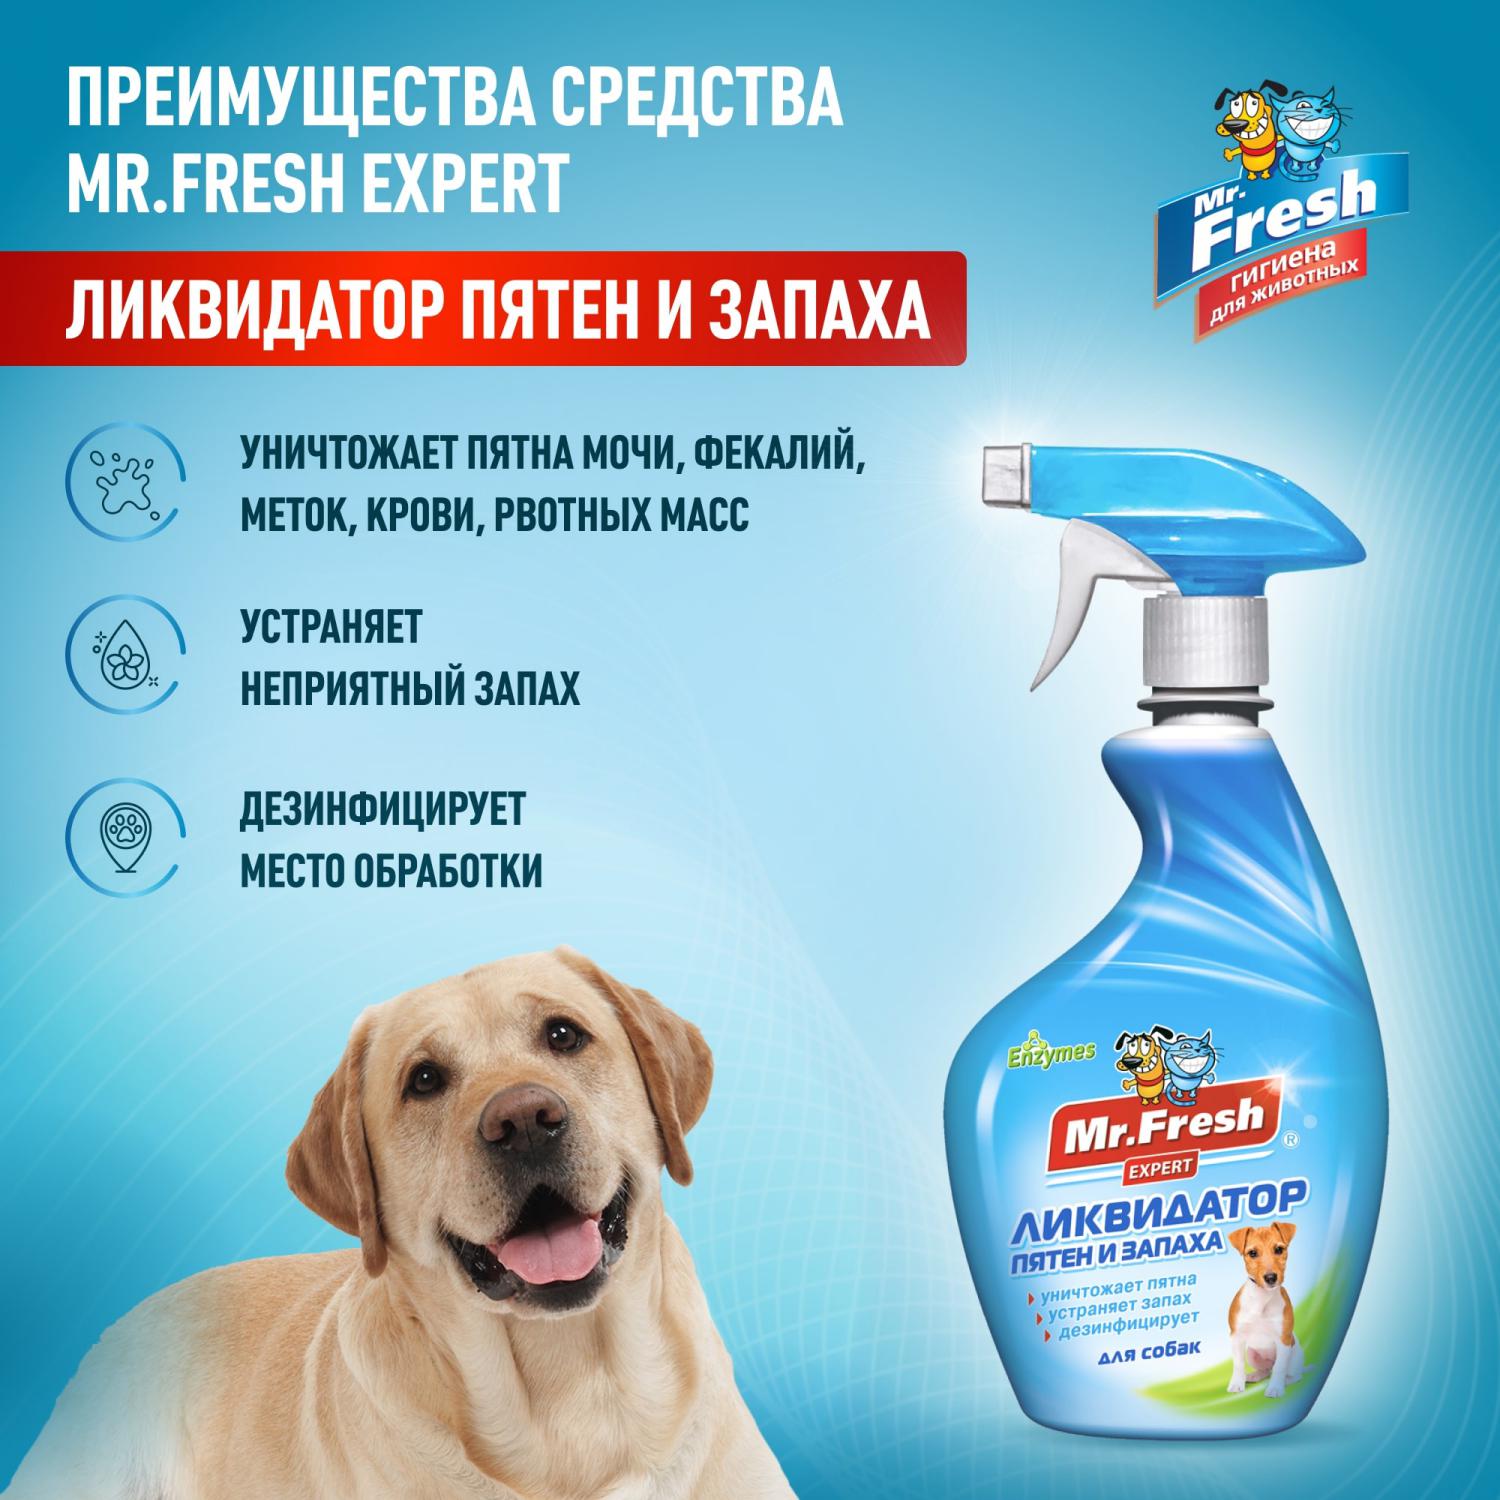 Спрей для собак Mr.Fresh Expert 3в1 ликвидатор пятен и запаха 500мл - фото 2